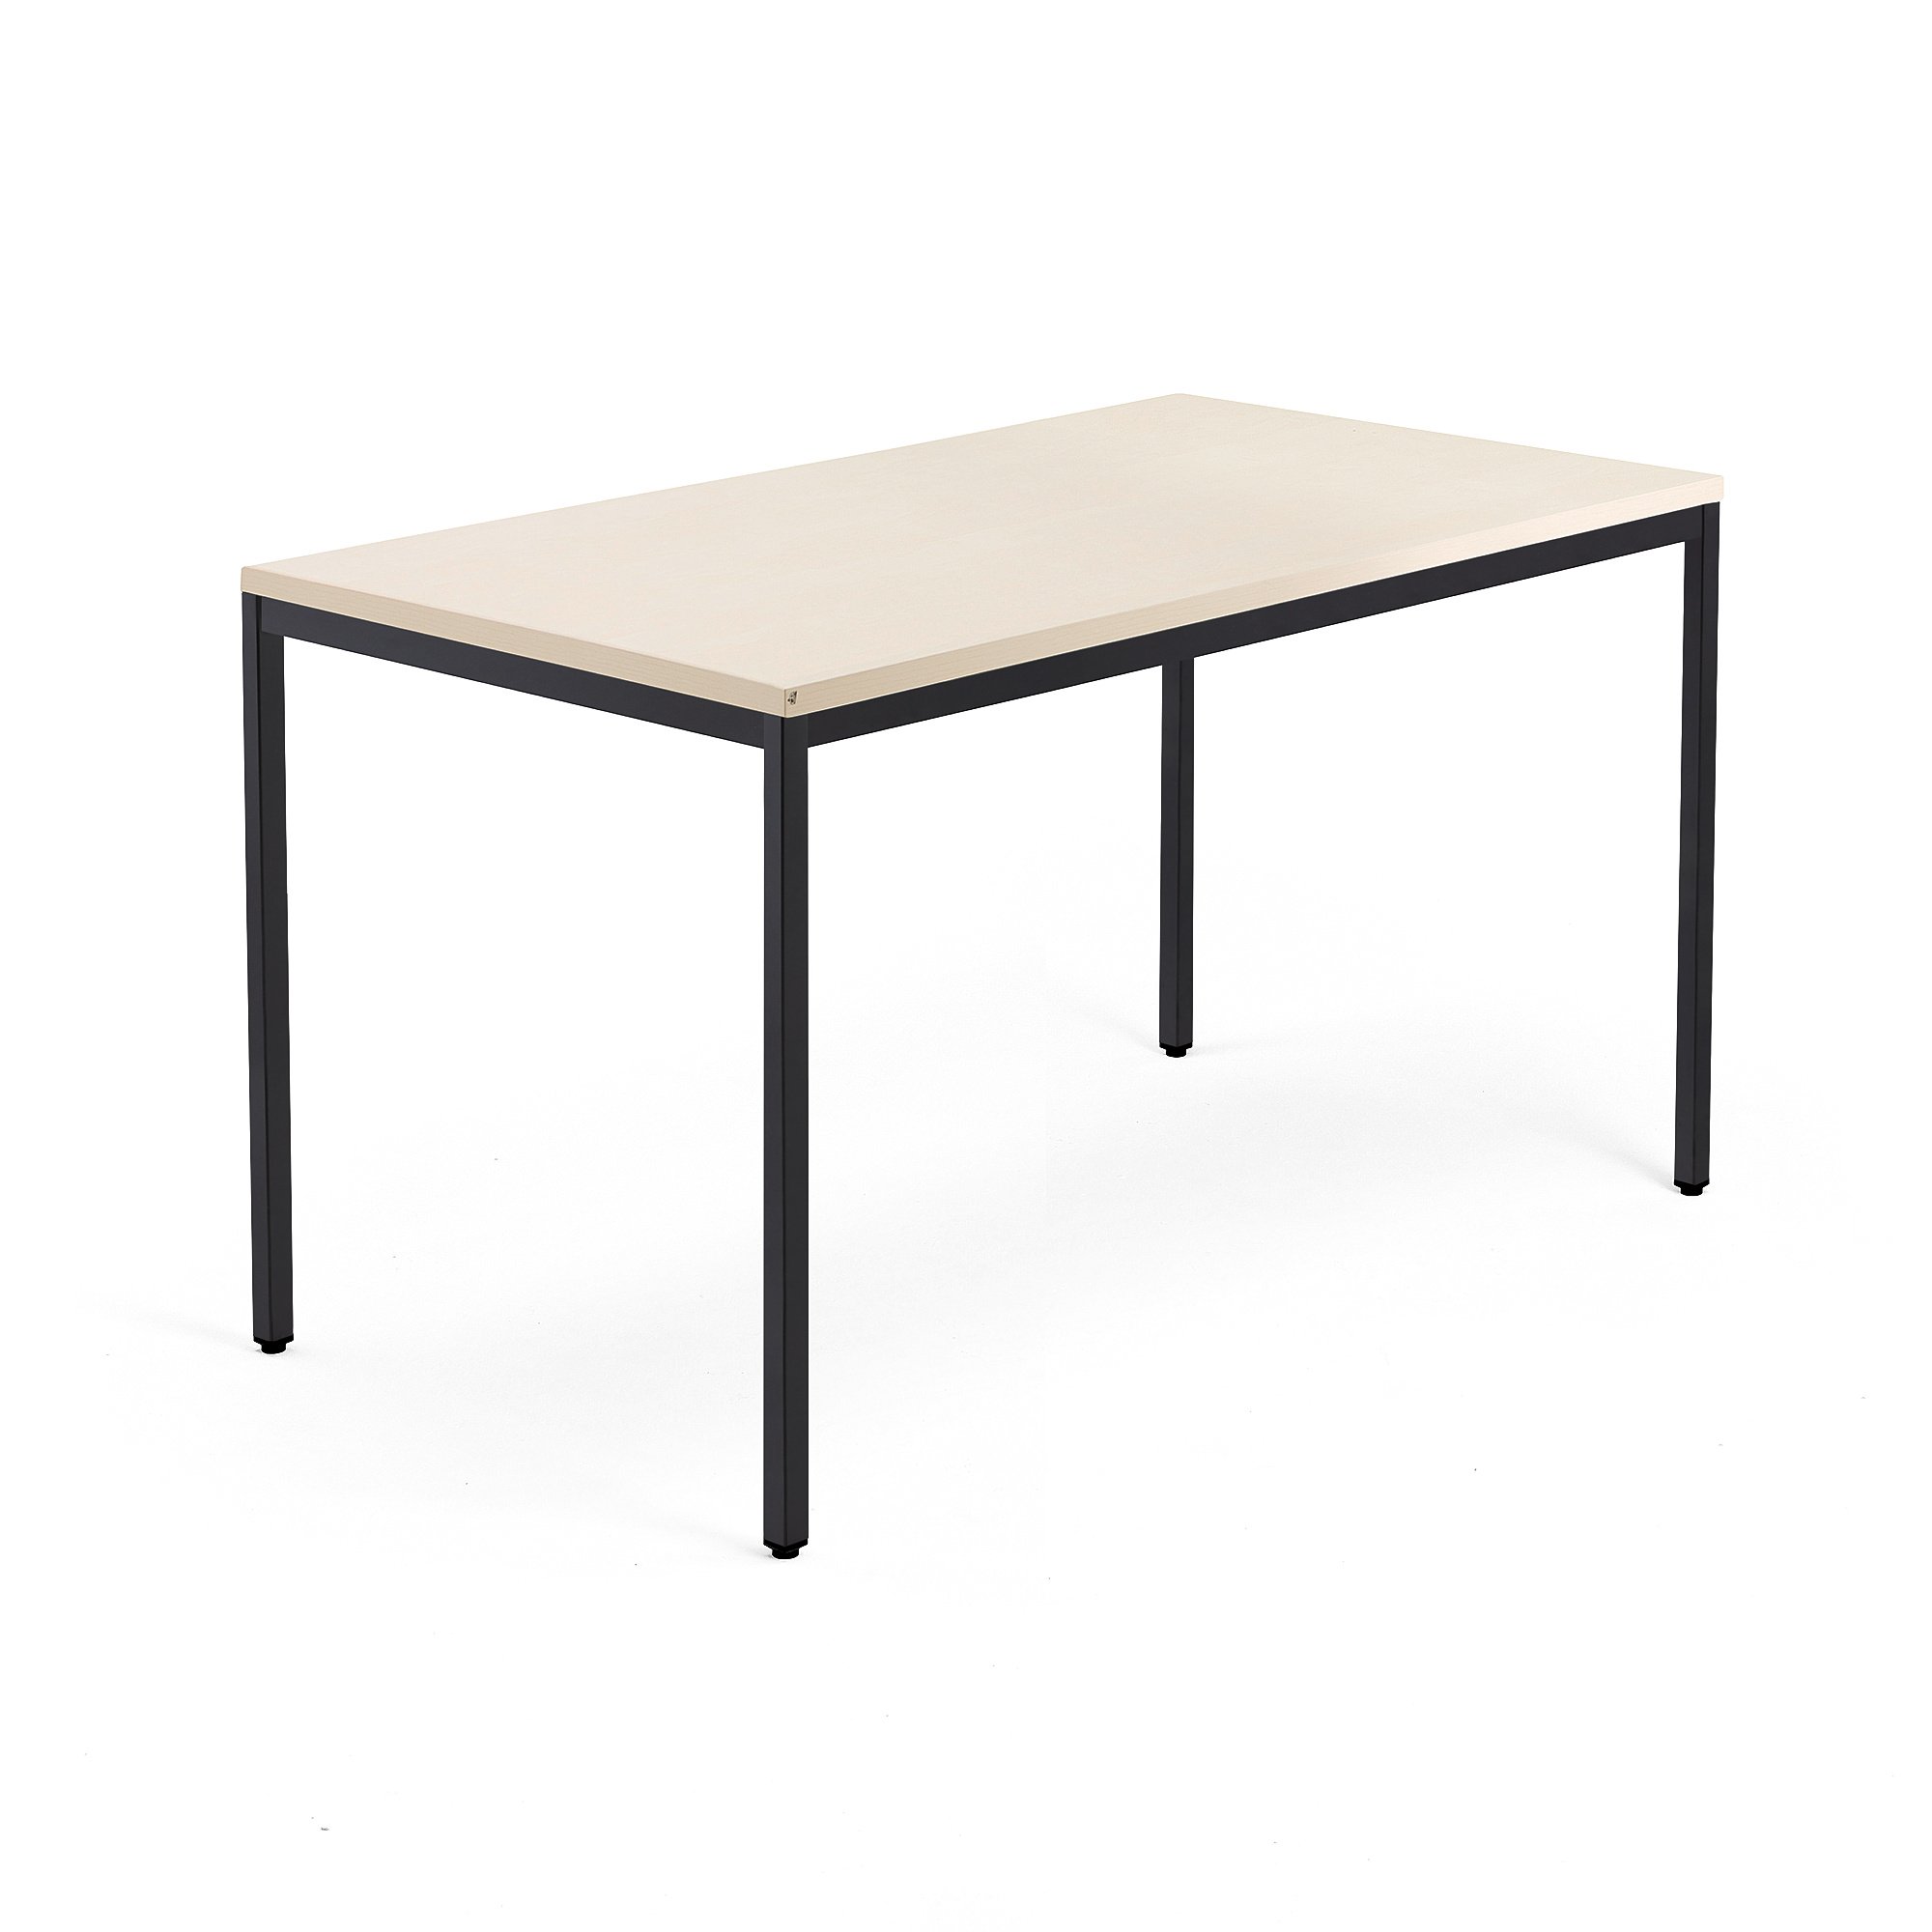 Psací stůl QBUS, 4 nohy, 1400x800 mm, černý rám, bříza